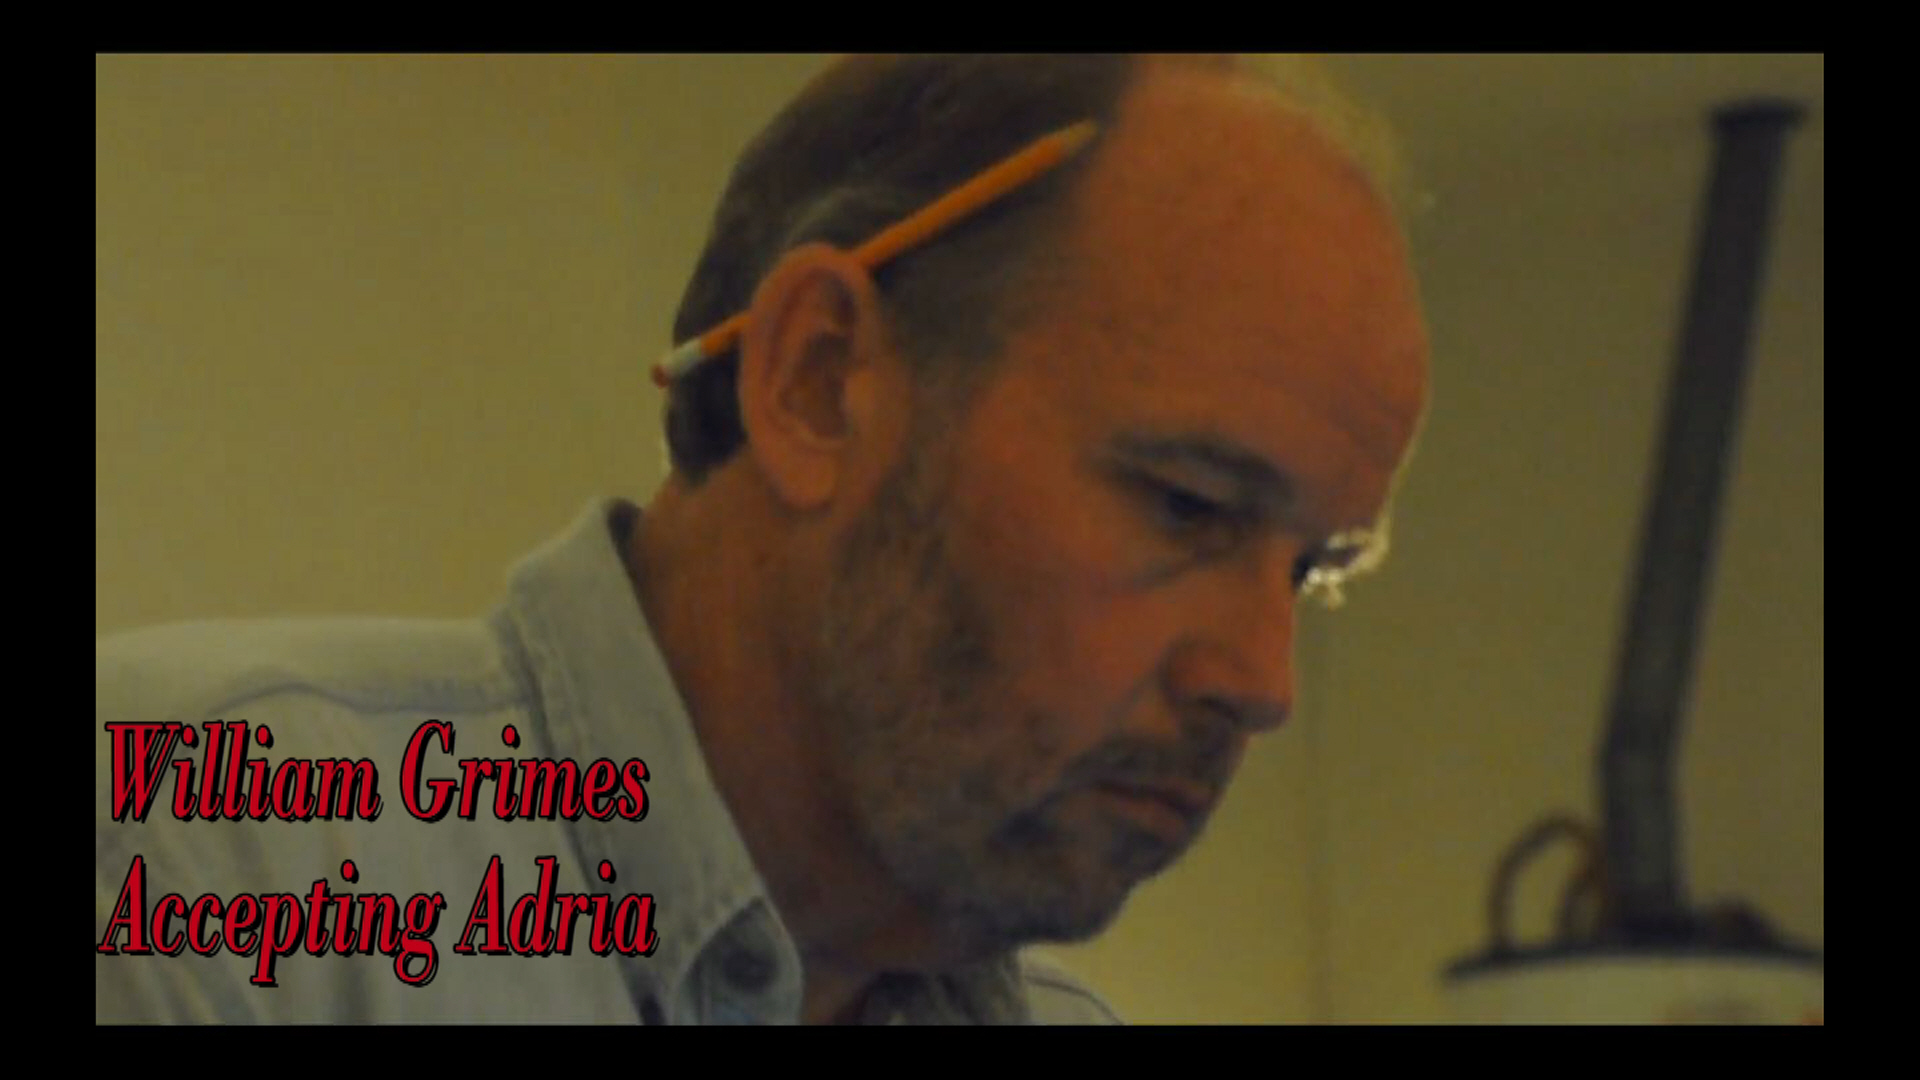 Short film, Accepting Adria Staring as William Grimes